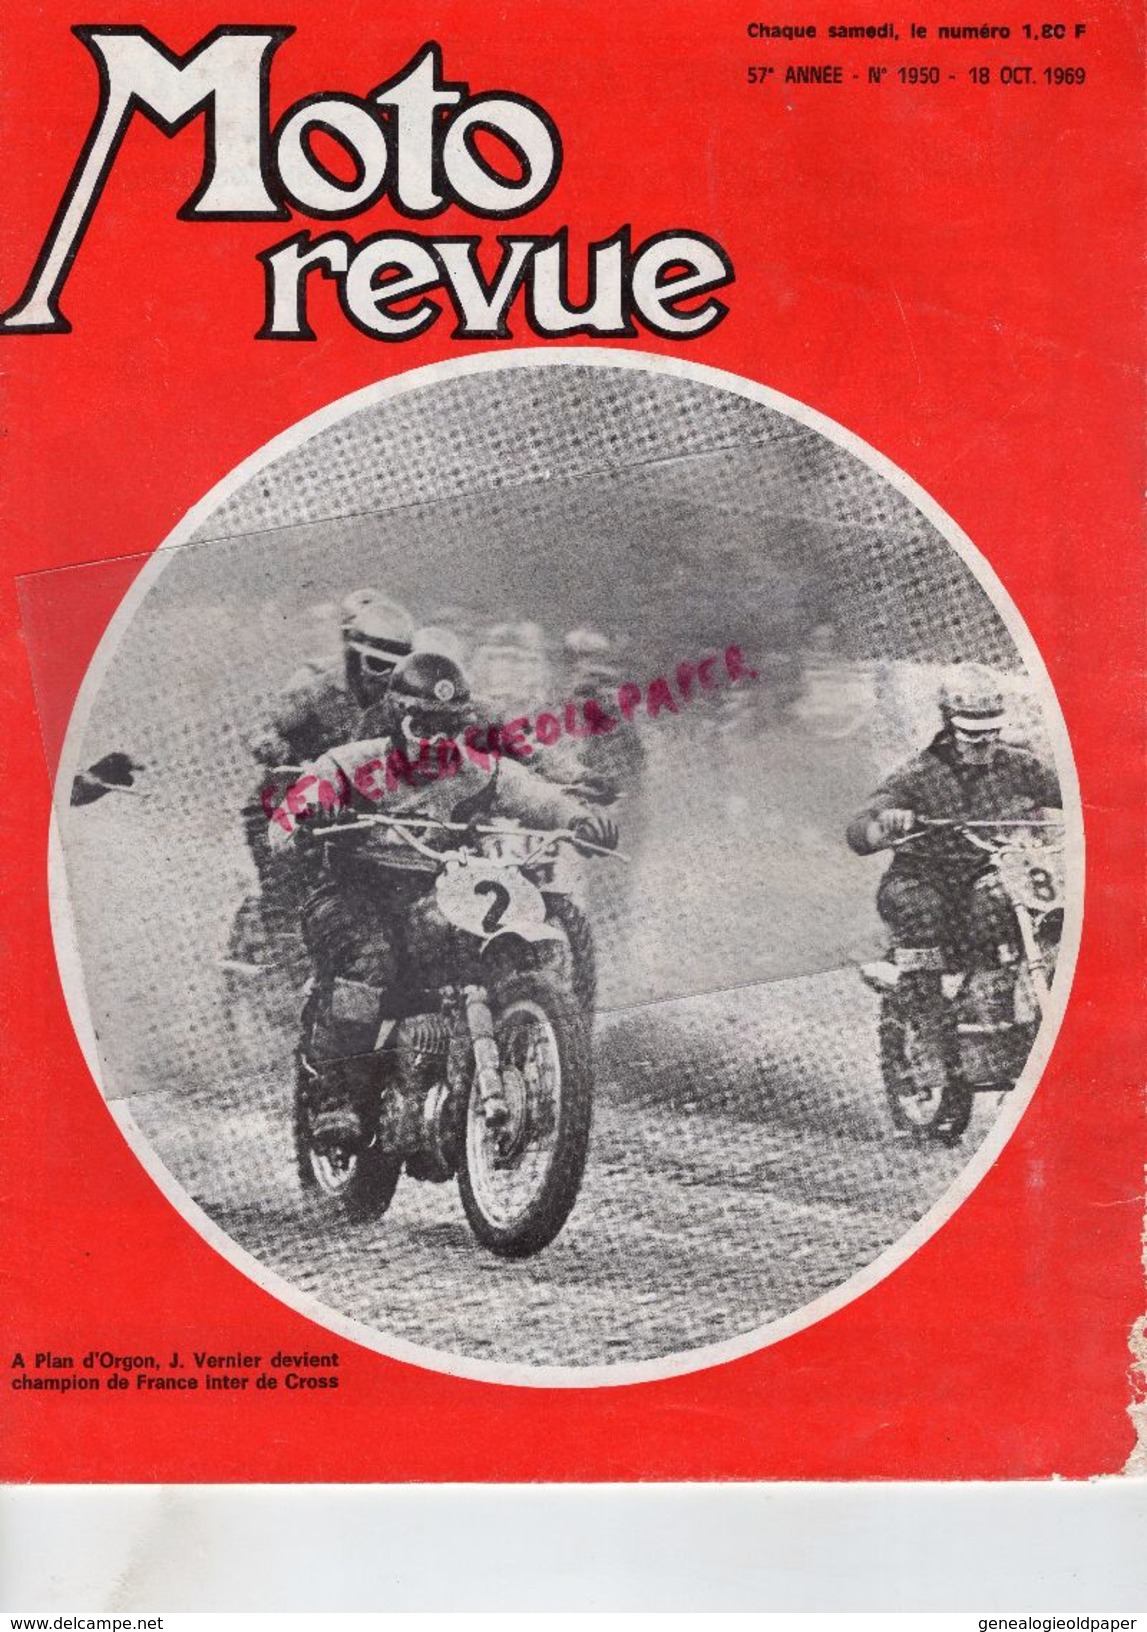 MOTO REVUE N° 1950- OCT.1969-J.VERNIER CROSS A PLAN D' ORGON-125 MOTOBECANE-350 DUCATI-JAWA CROSS-CLAUDE THOMAS GARMISCH - Motorrad